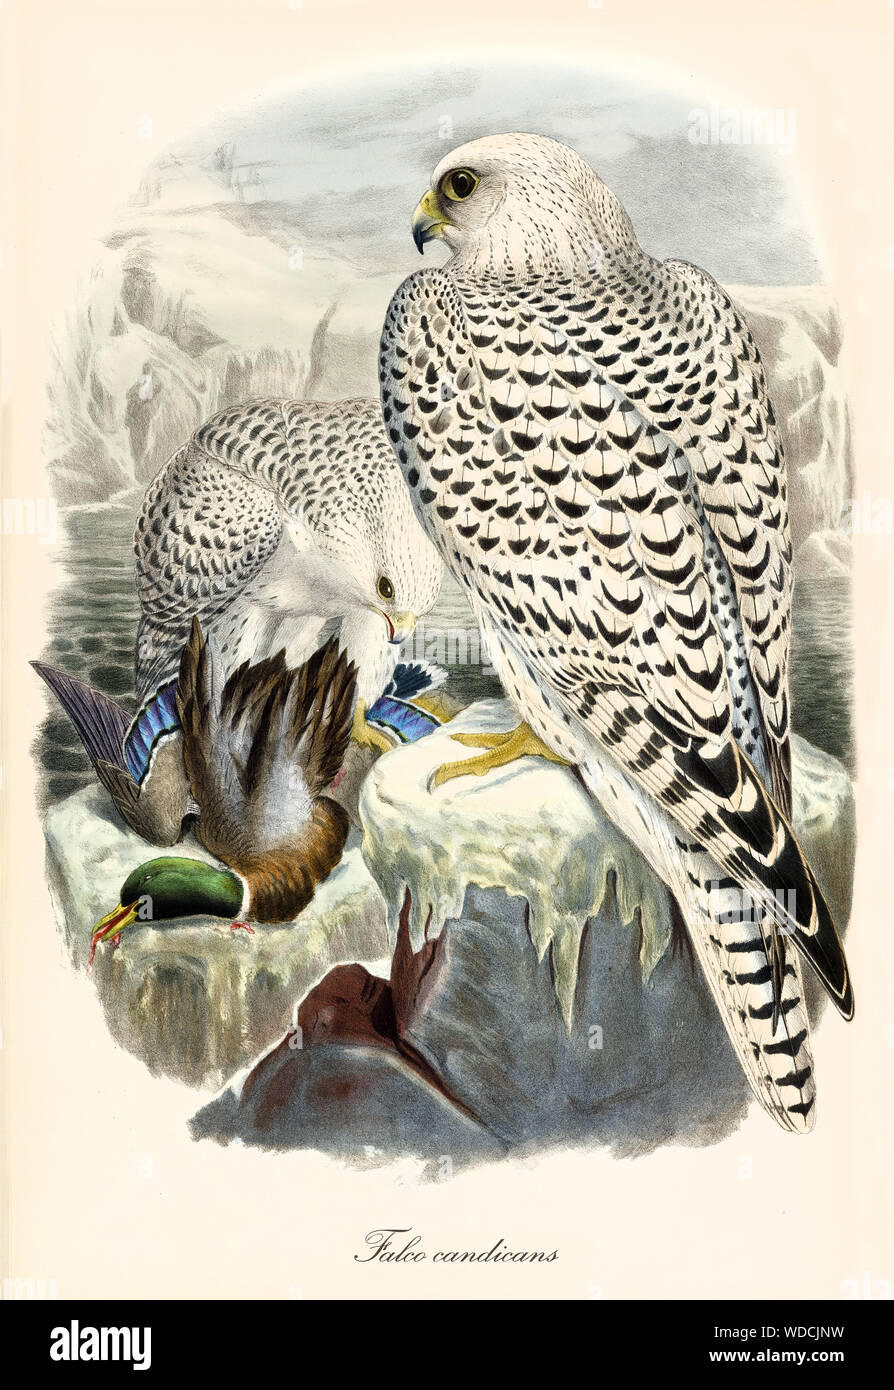 Zwei Greifvögel auf einem Felsen nachdem eine Ente gejagt. Sie haben weiße Federn mit schwarzen Punkten. Alte Abbildung: Gyrfalcon (Falco rusticolus). Von John Gould publ. In London, 1862 - 1873 Stockfoto